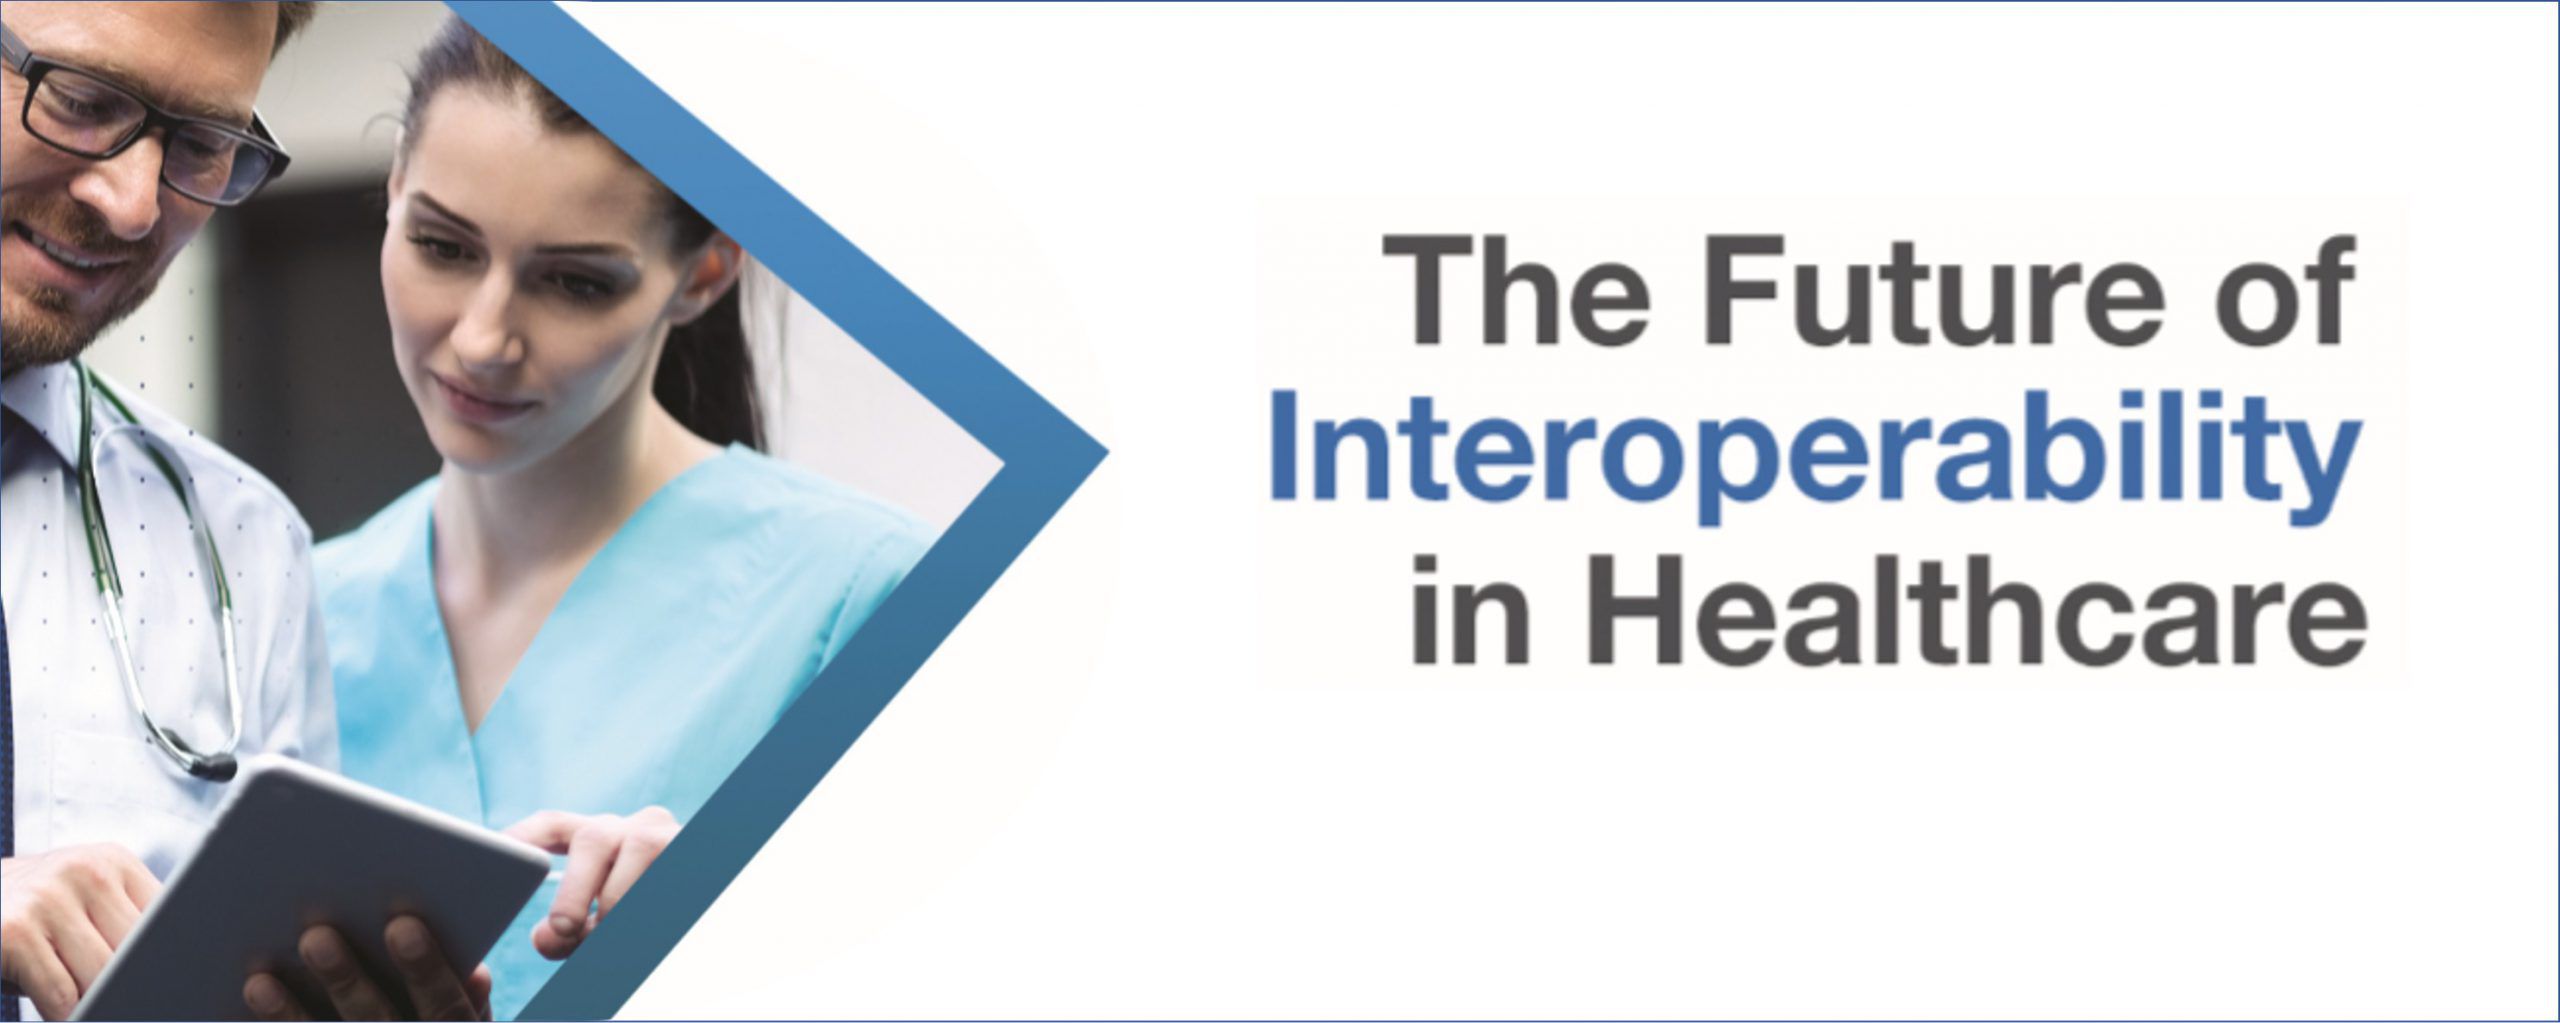 The Future of
Interoperability
In Healthcare